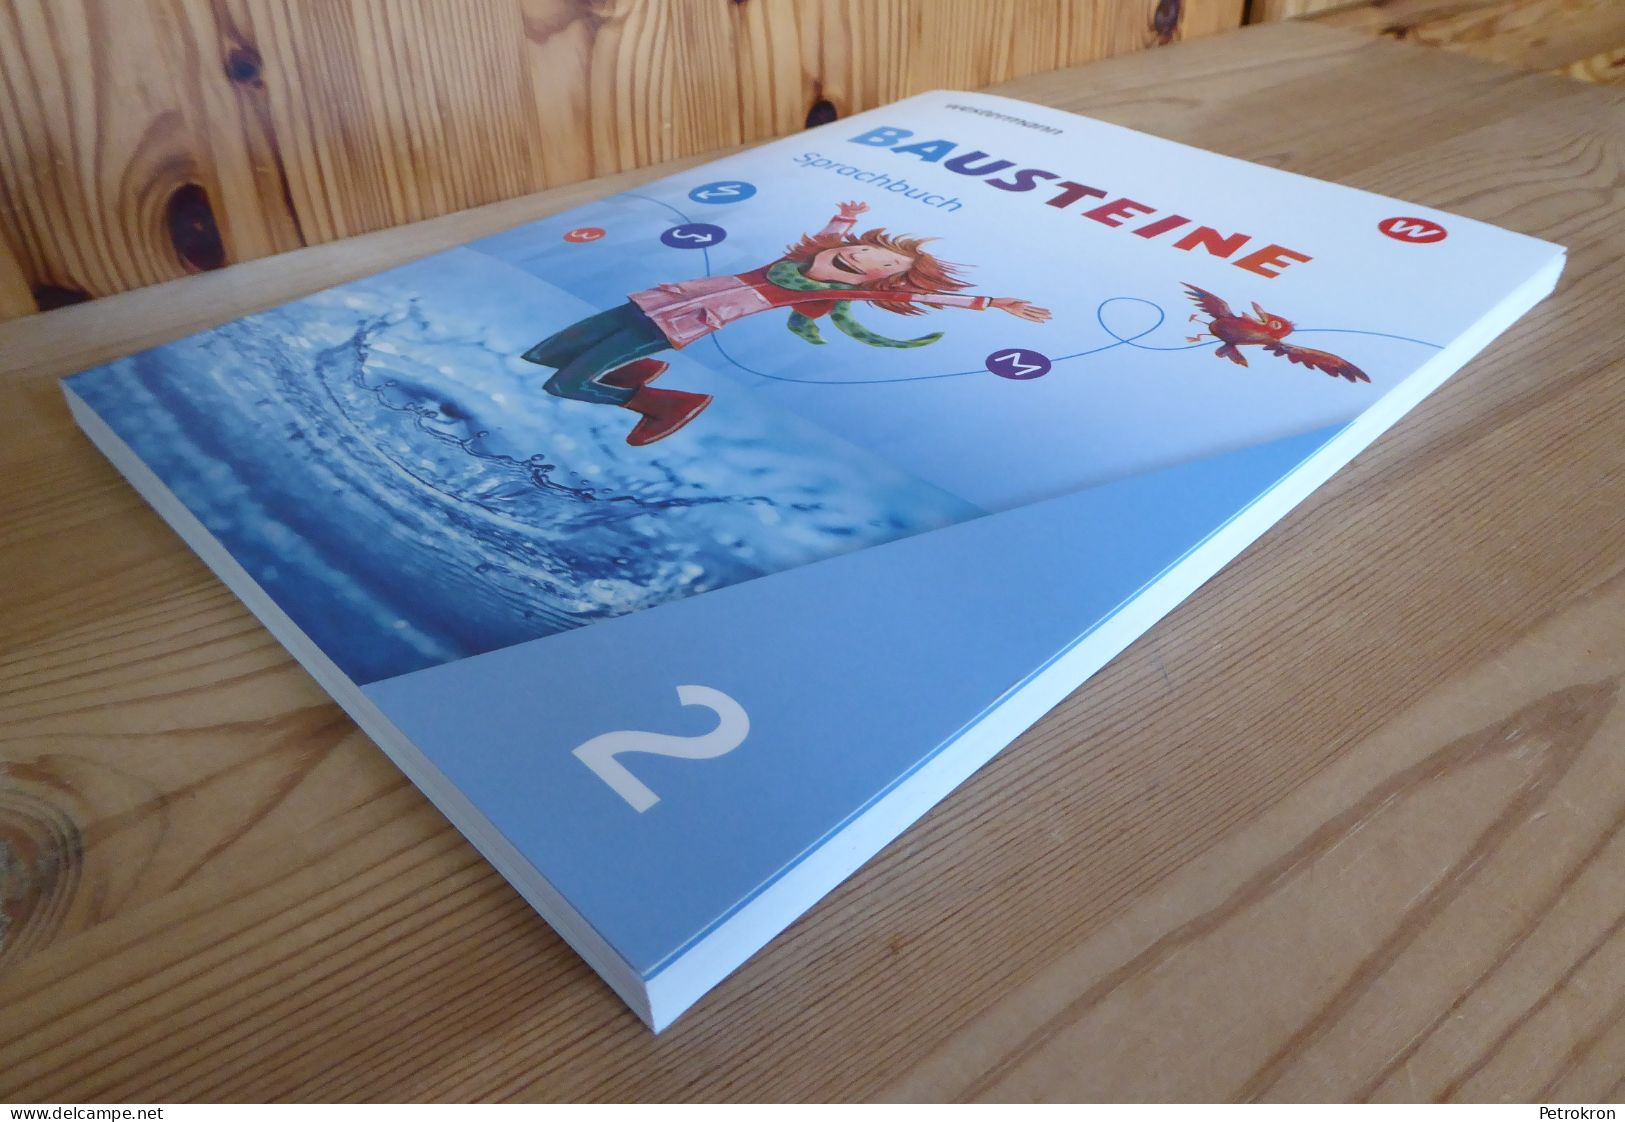 Westermann Bausteine Sprachbuch Klasse 2 Grundschule Deutsch 2020 Mit Beiheft - School Books